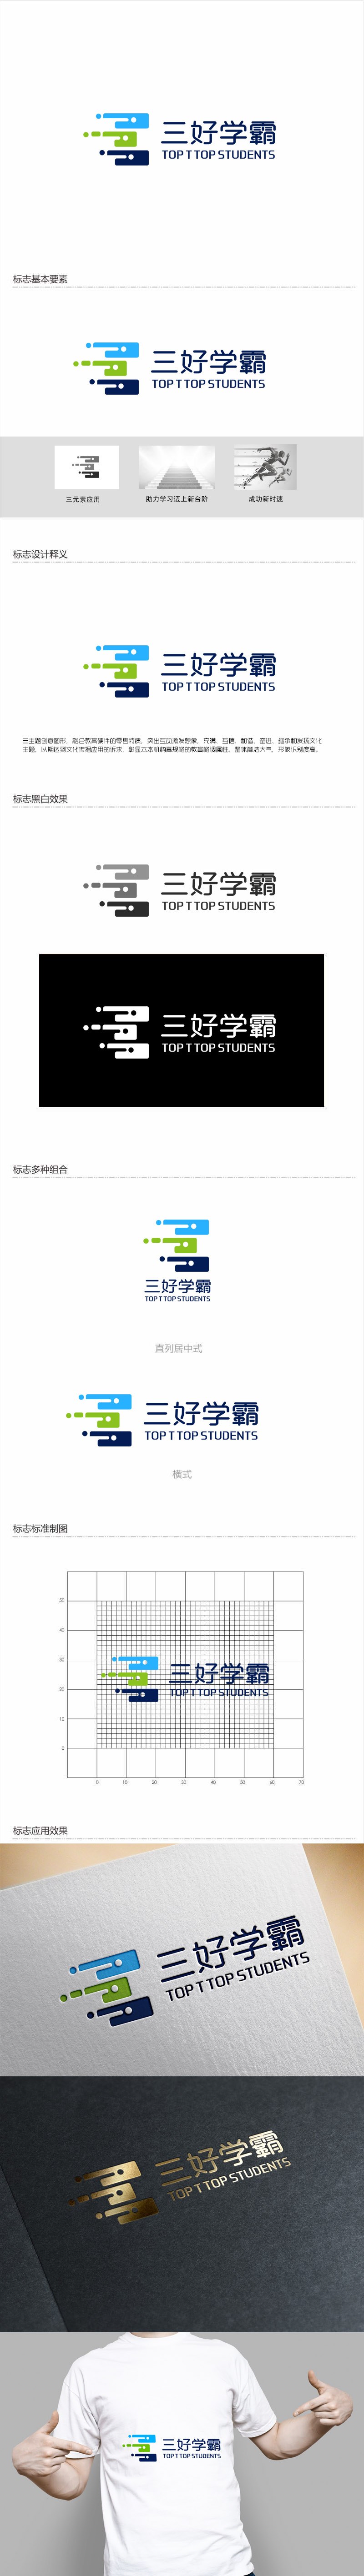 郭庆忠的三好学霸logo设计